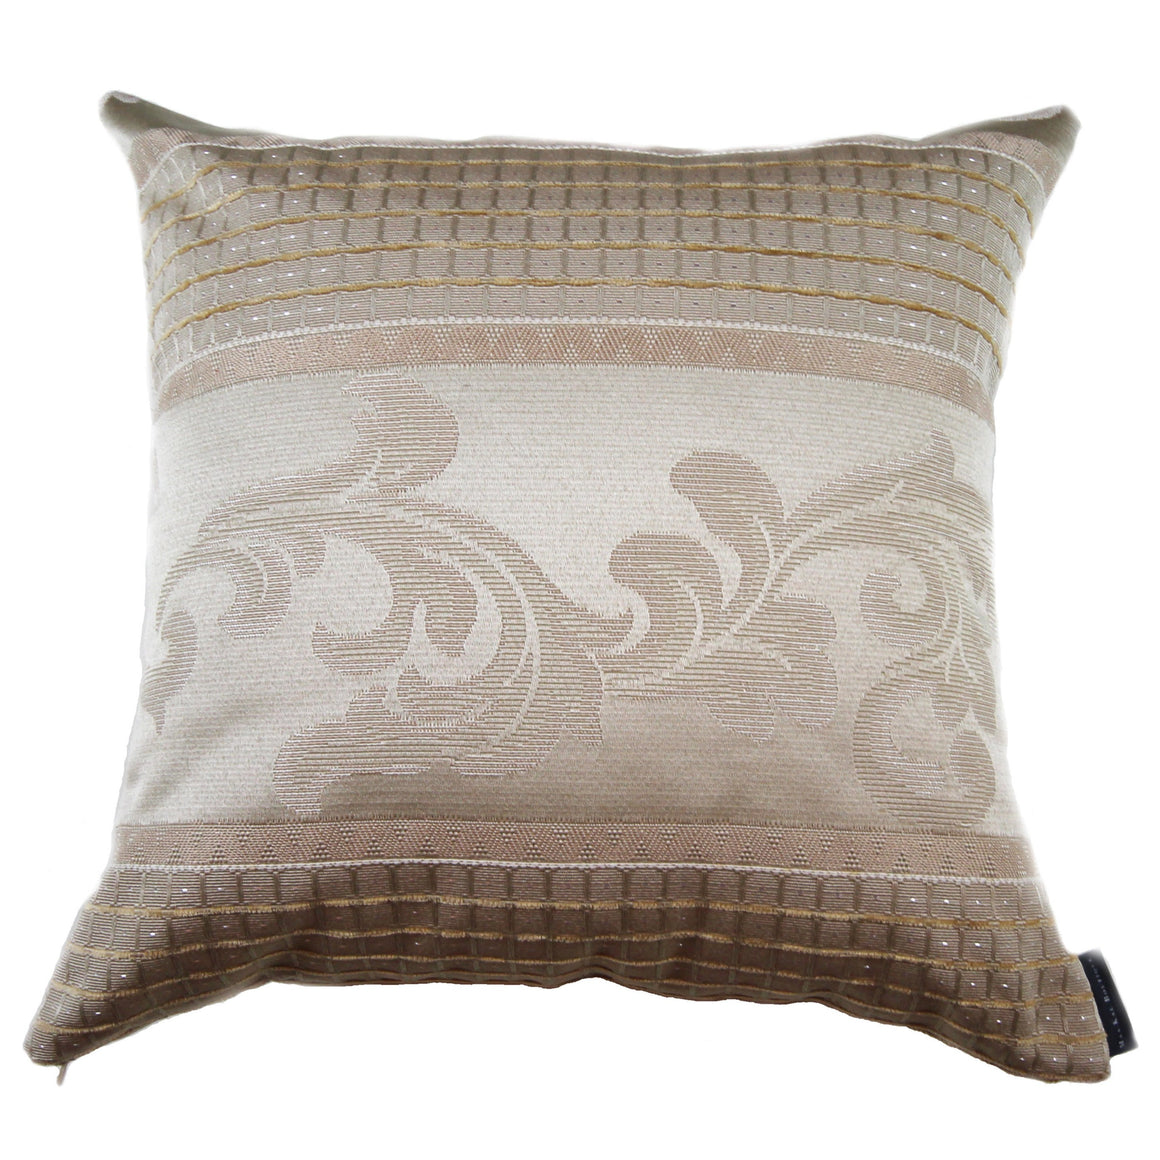 Altona - Light Beige Floral Pillow Cover - 19x19 - 20x20 - 22x22